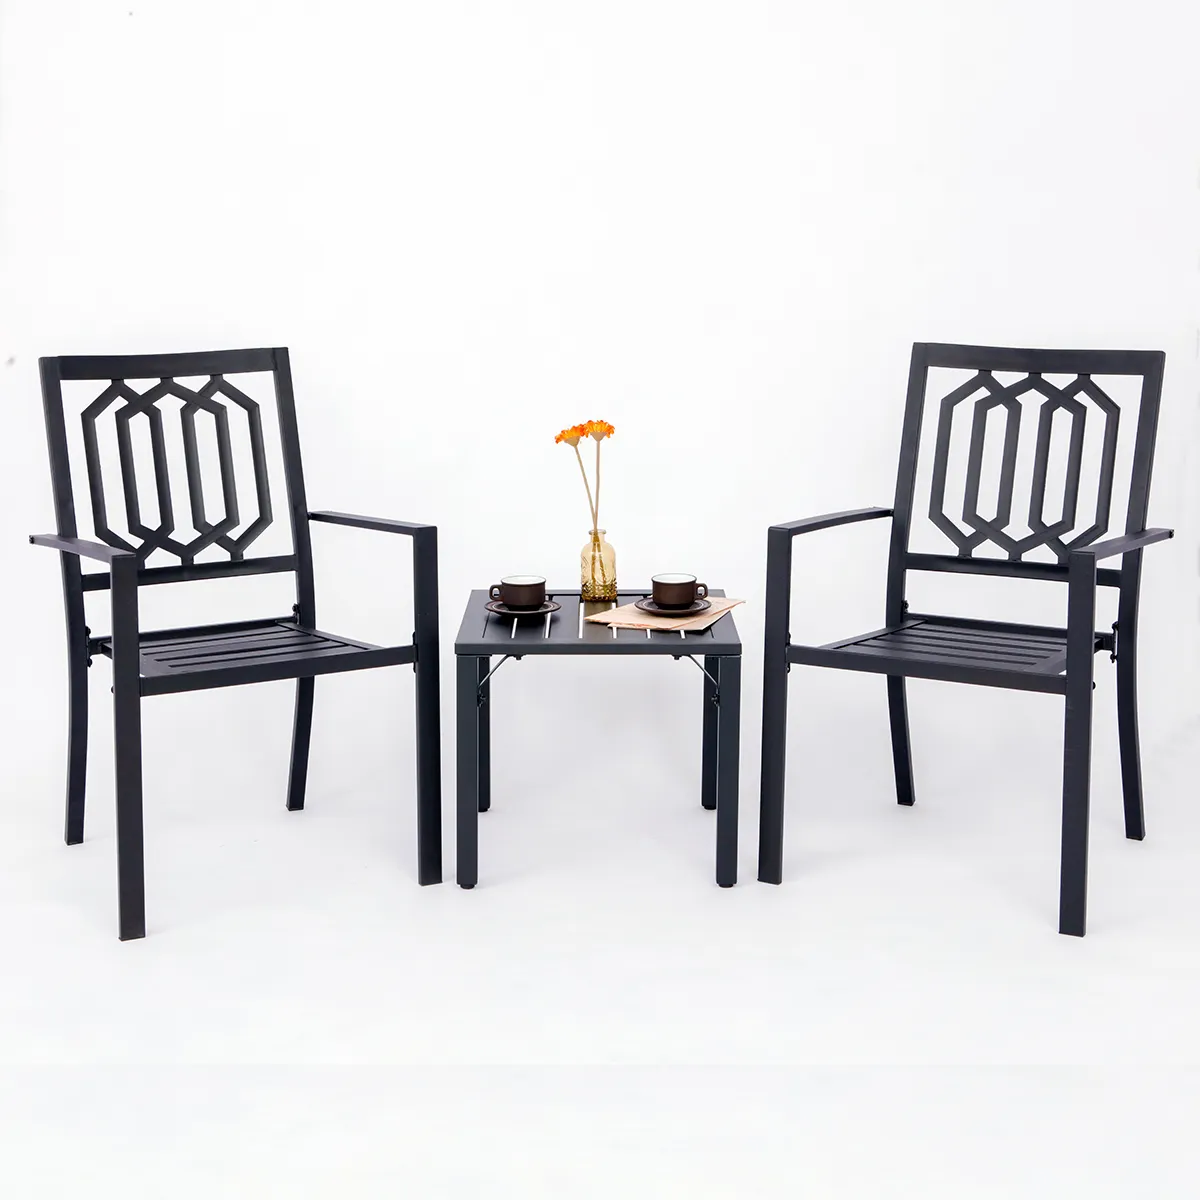 ชุดโต๊ะแบบน็อคดาวน์เฟอร์นิเจอร์กลางแจ้งเก้าอี้แคมป์พร้อมที่จับเก้าอี้เหล็กสำหรับโต๊ะอาหาร